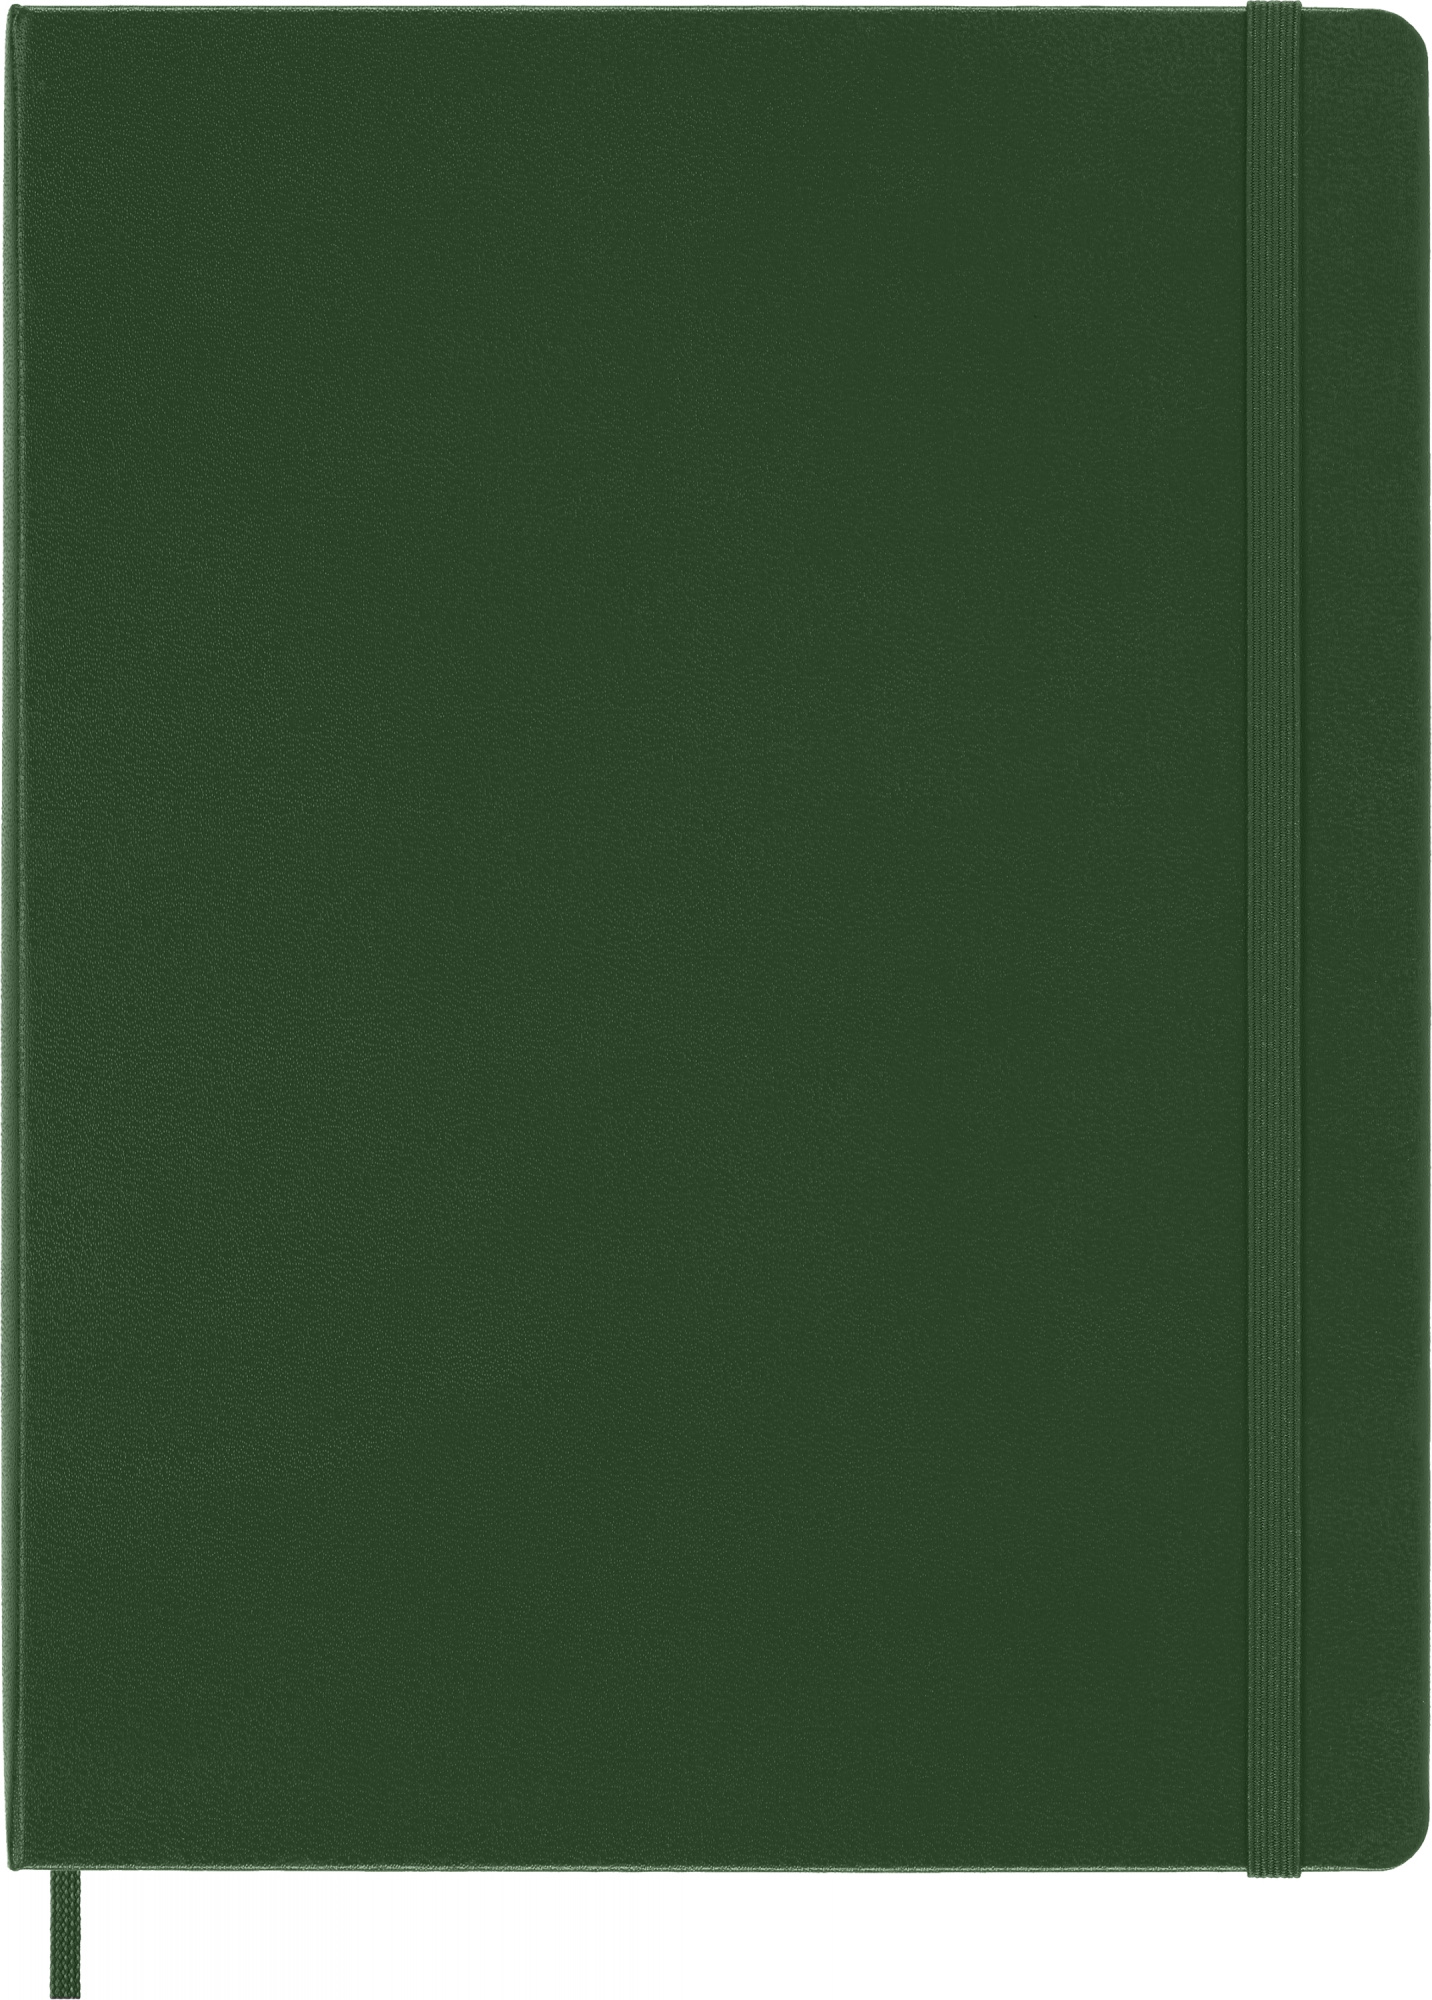 Блокнот Moleskine CLASSIC QP091K15 XLarge 190х250мм 192стр. клетка твердая обложка зеленый